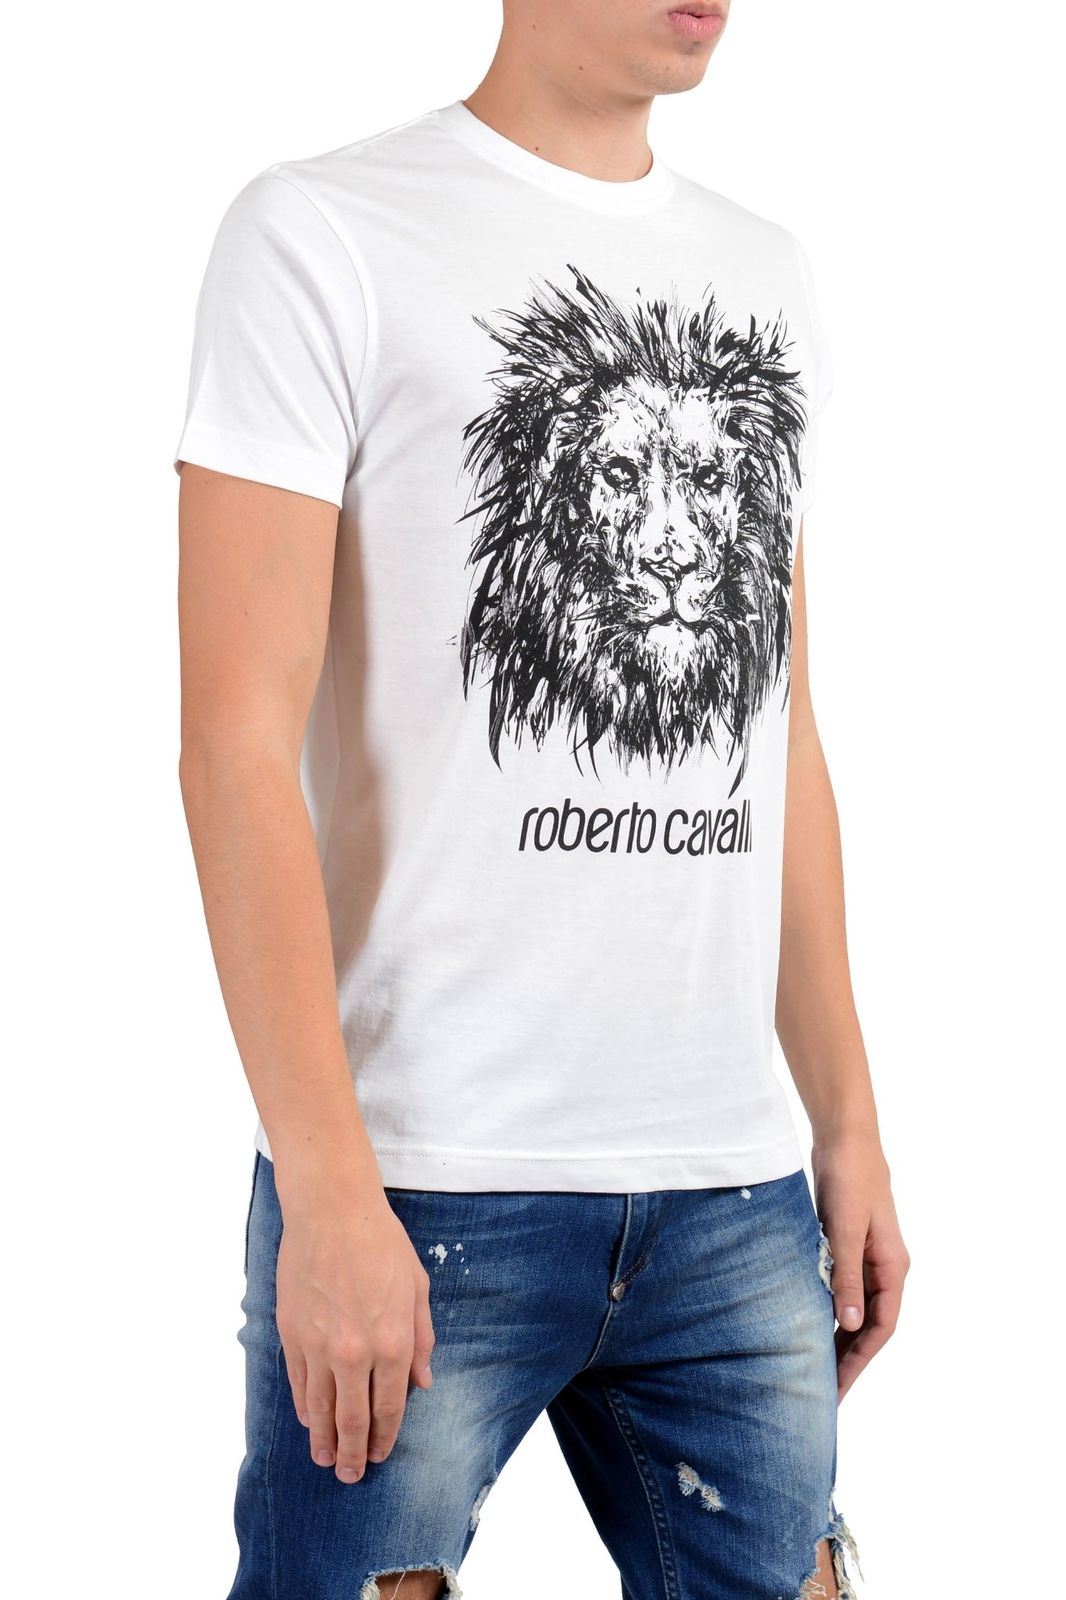 Roberto Cavalli Men's White Graphic Lion Crewneck T-Shirt Size S M L XL ...